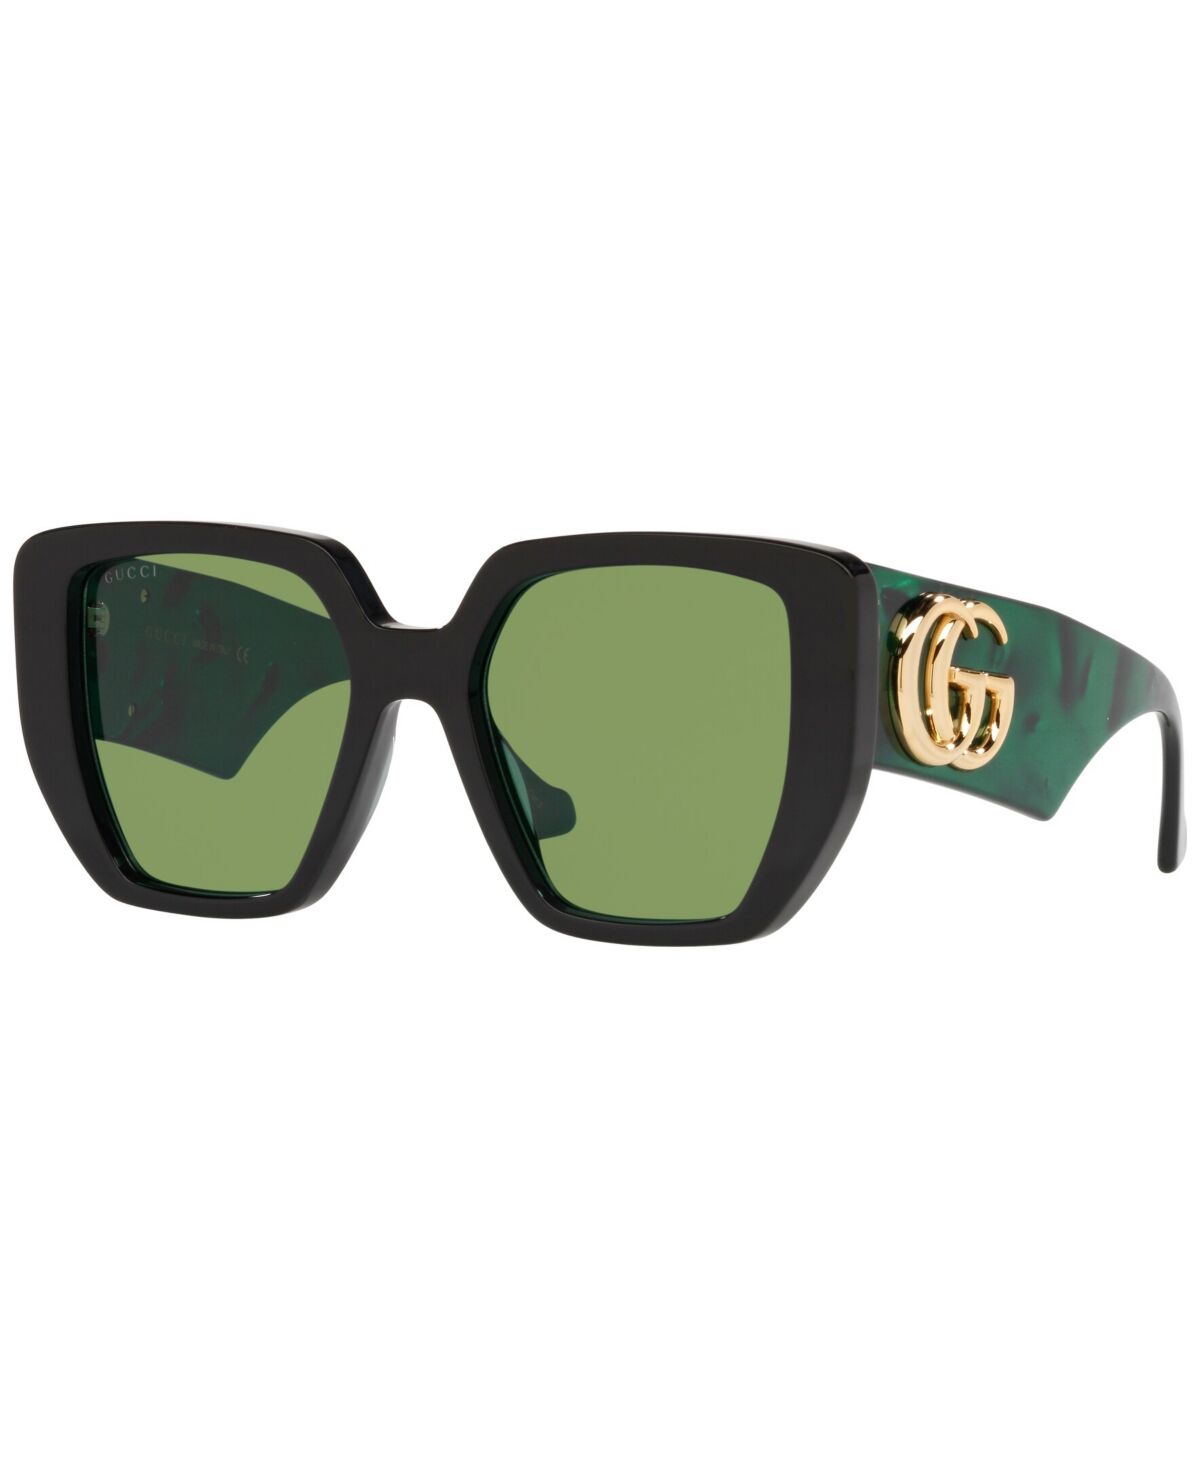 Gucci Women's Sunglasses, GC001595 - Black/Green Solid